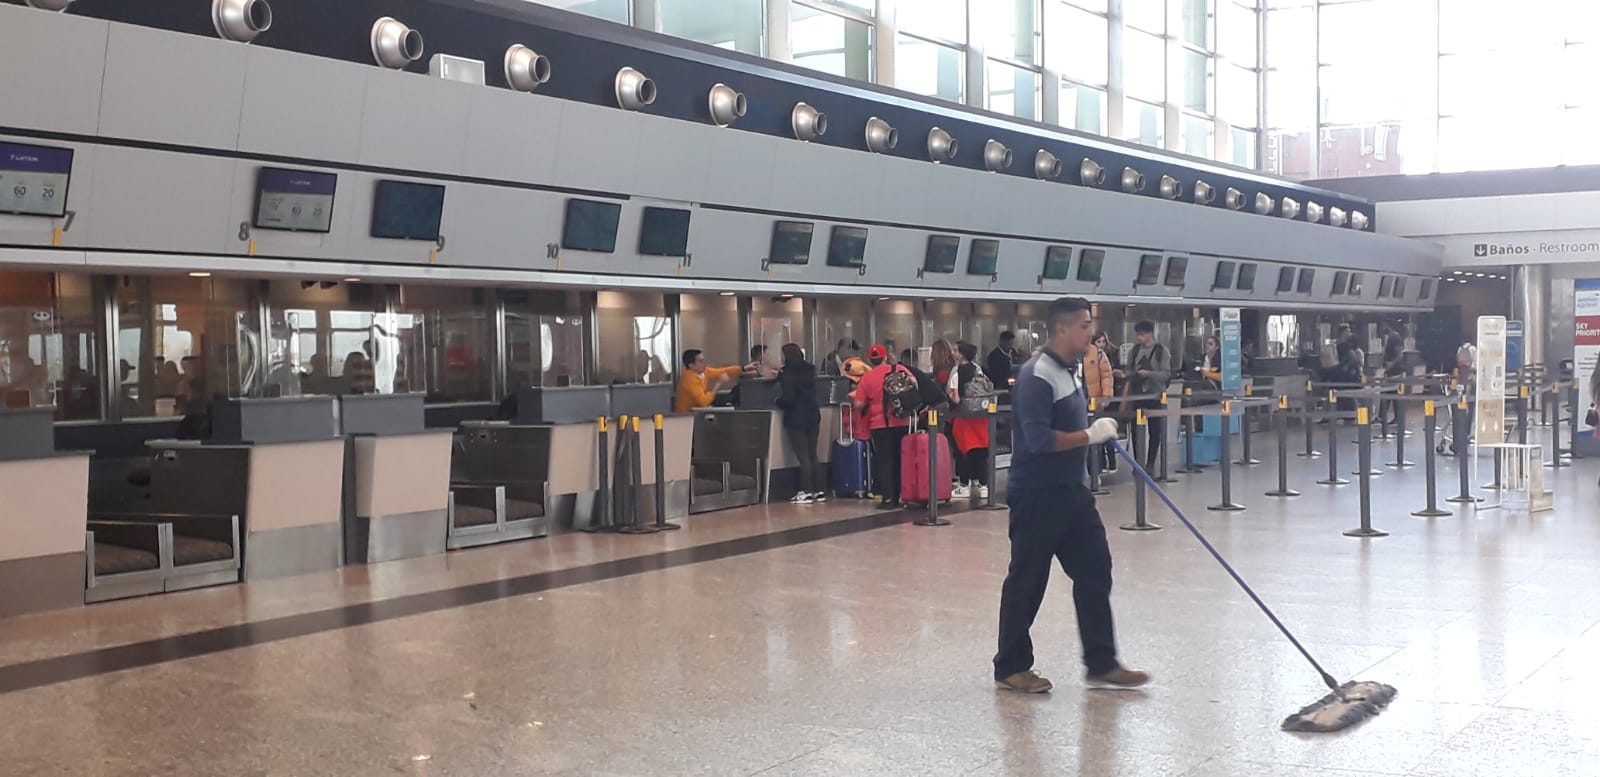 Reestablecen la operación del Aeropuerto de Córdoba tras la amenaza de bomba • Canal C